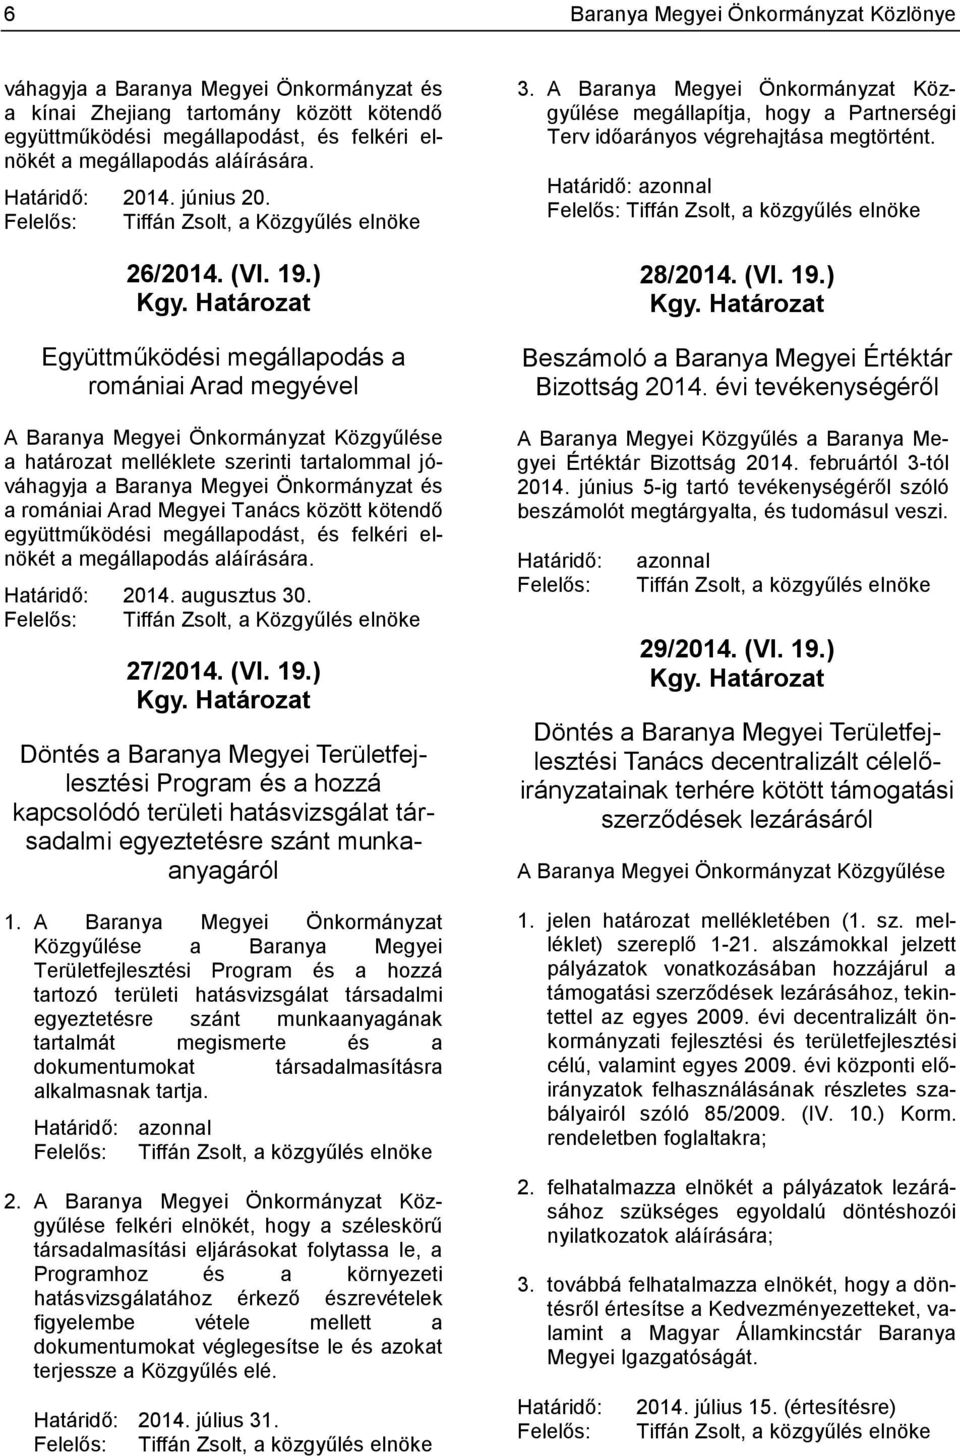 Határozat Együttműködési megállapodás a romániai Arad megyével A Baranya Megyei Önkormányzat Közgyűlése a határozat melléklete szerinti tartalommal jóváhagyja a Baranya Megyei Önkormányzat és a